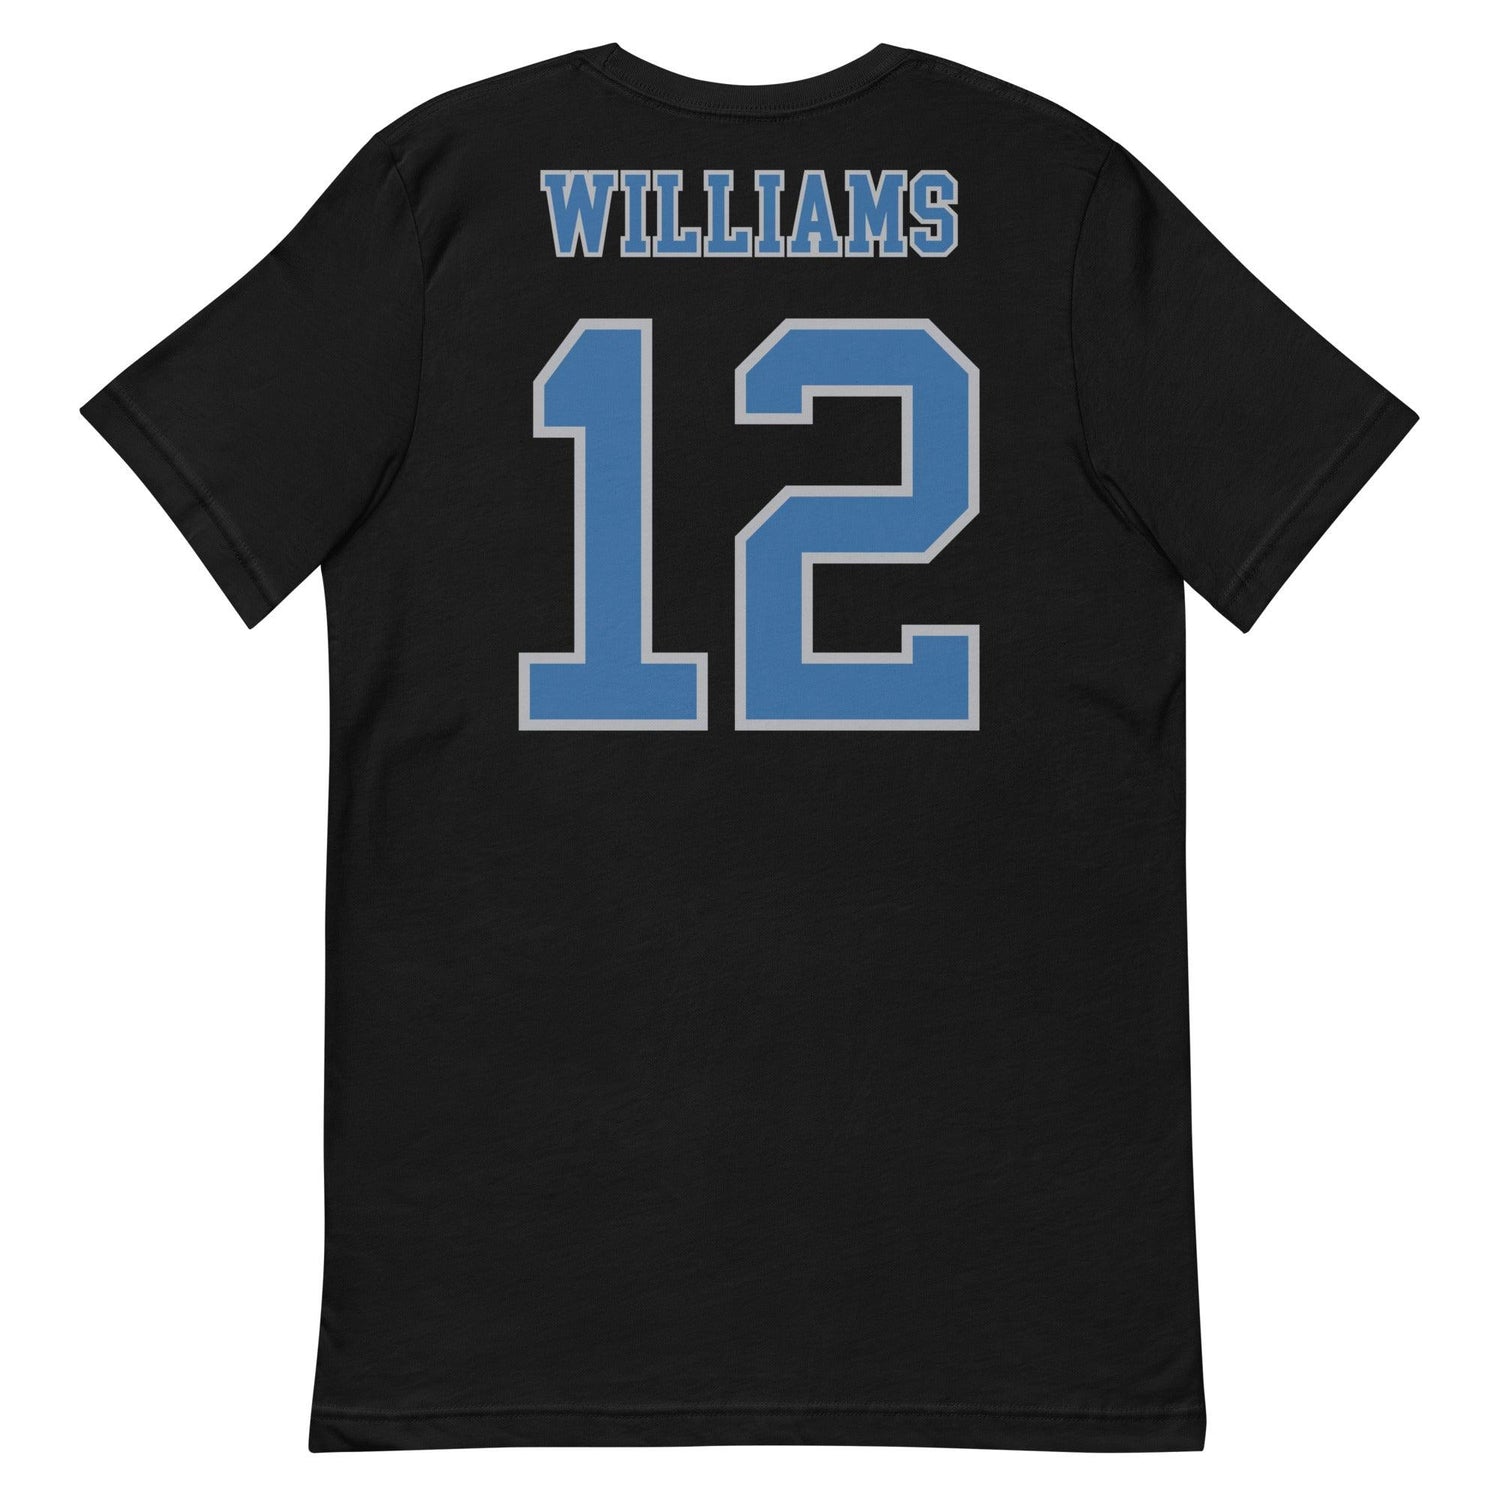 DeAndre Williams "Jersey" t-shirt - Fan Arch